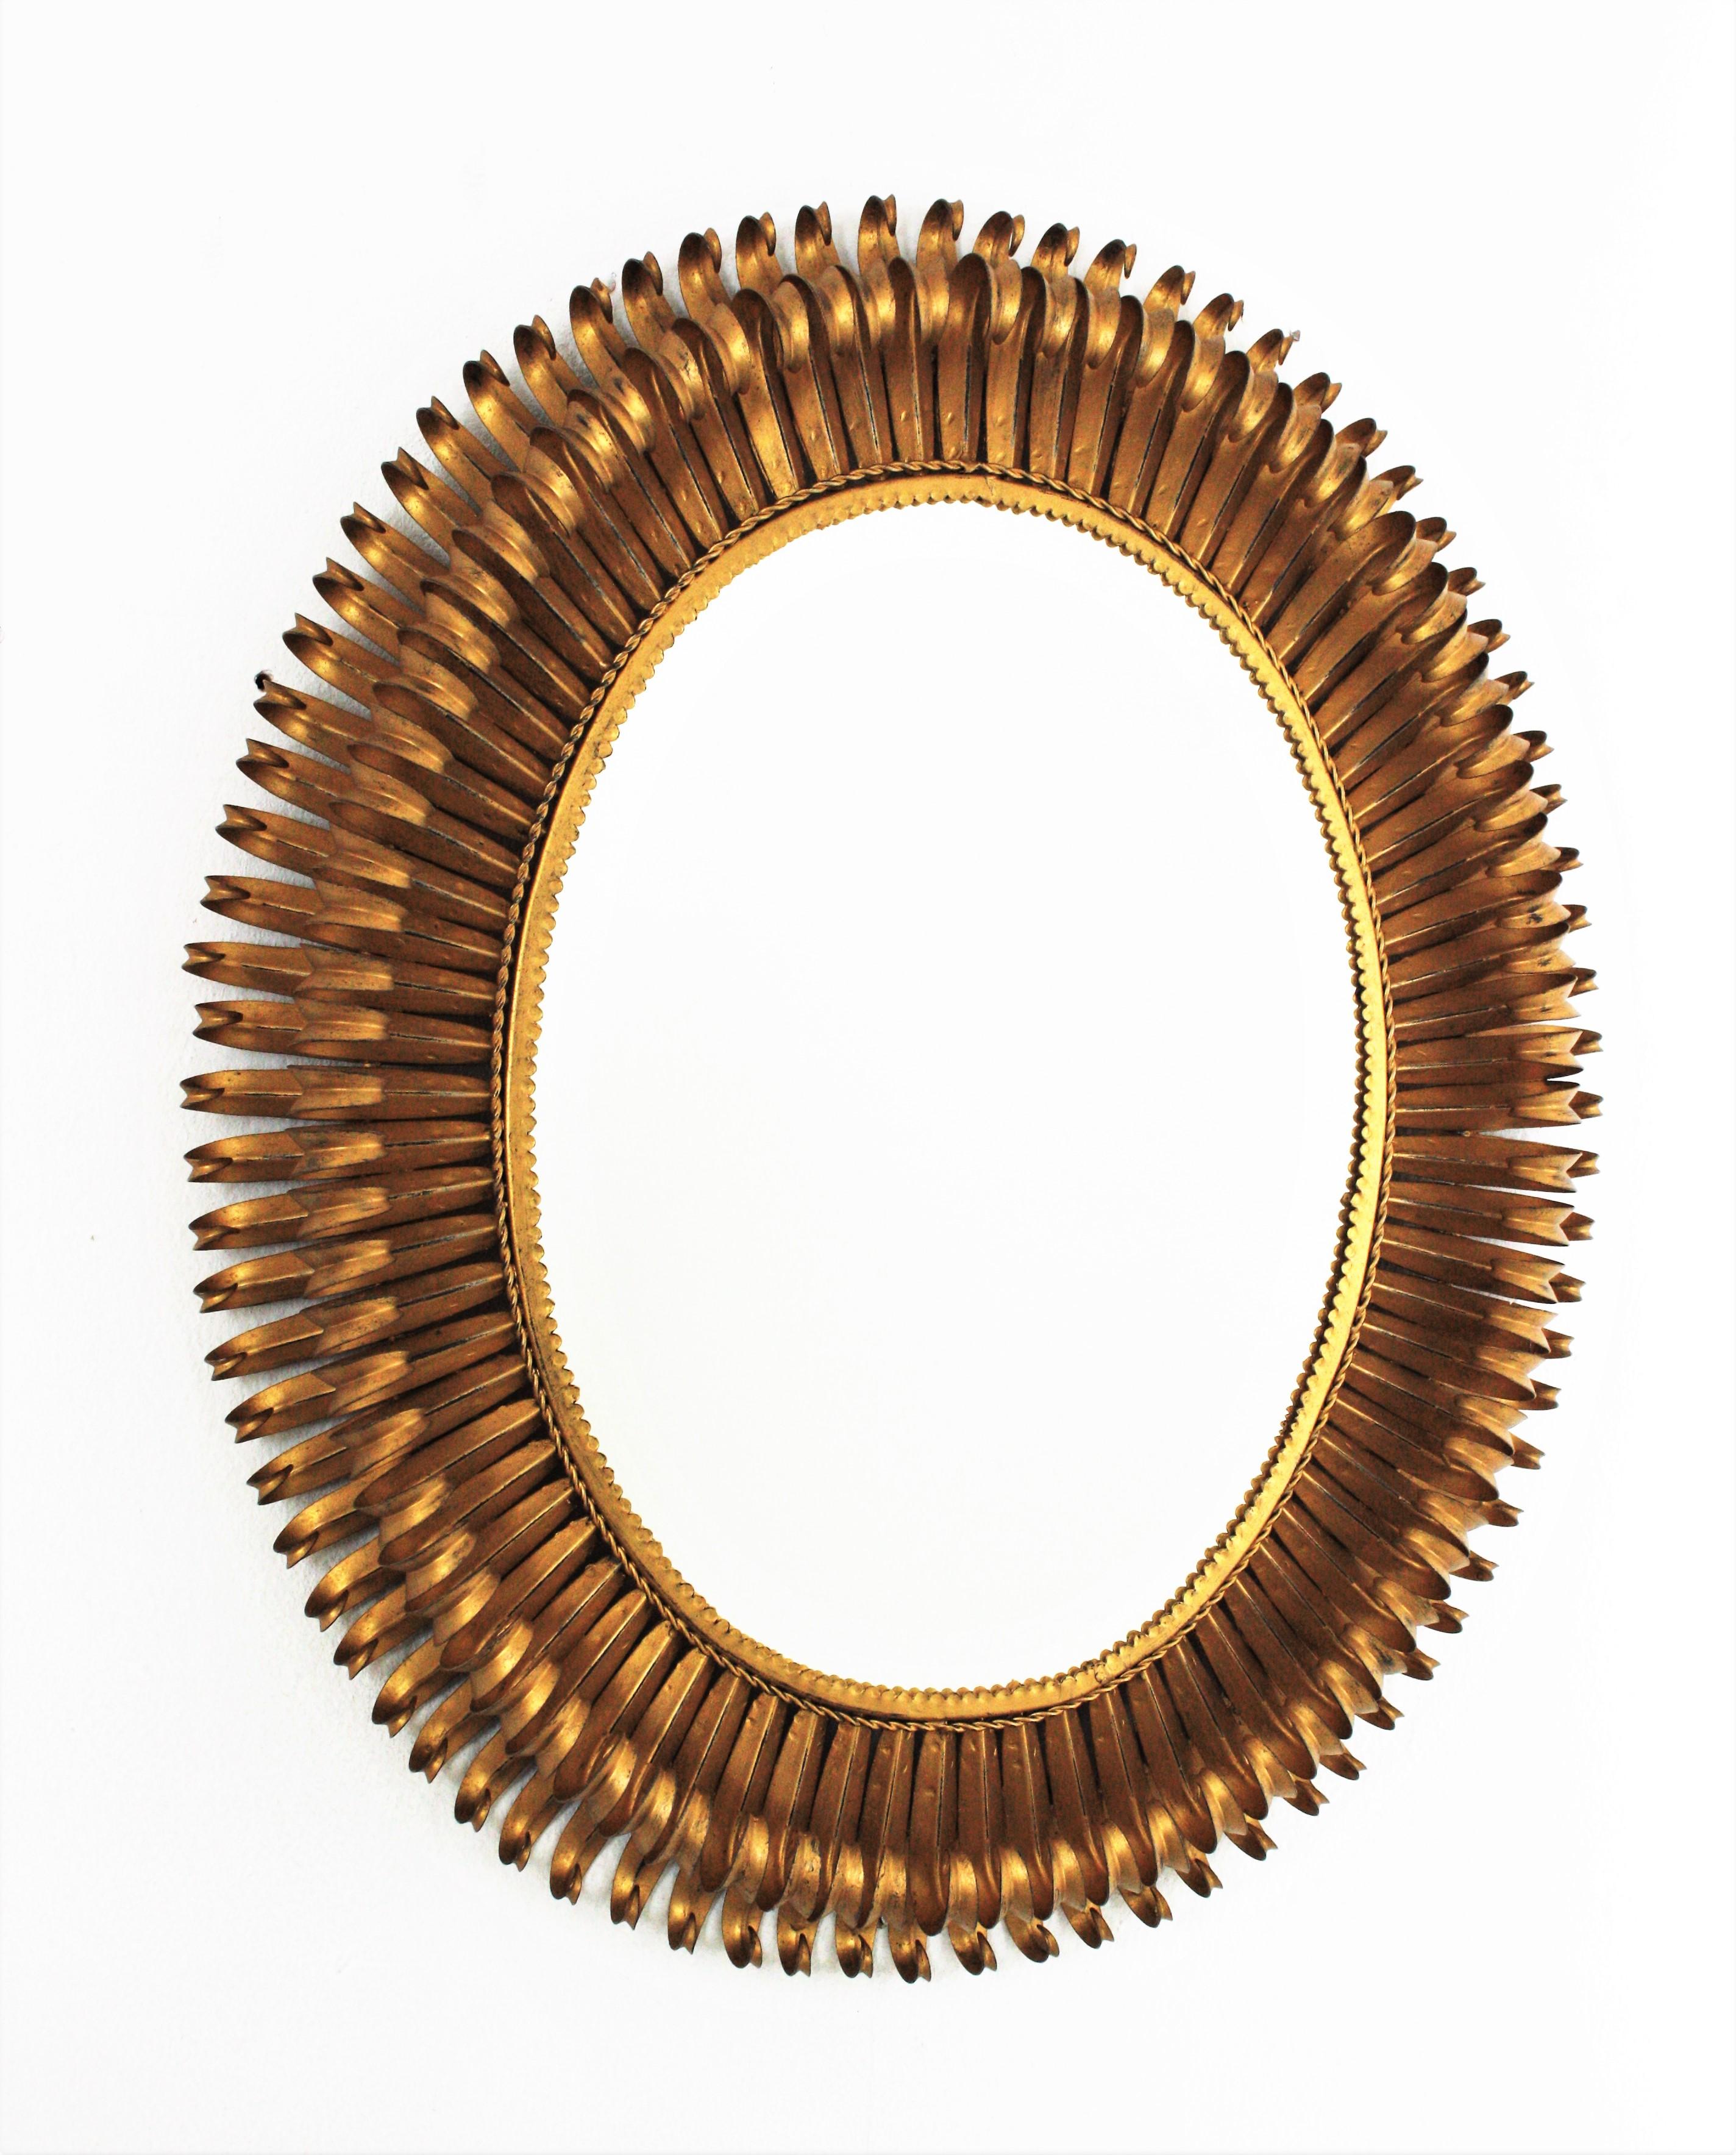 Grand miroir en fer doré à cils à double couche, France, années 50
Le cadre est constitué d'une double couche de poutres courbes en forme de cils.
Il constituera un bel ajout de style midcentury, où que vous le placiez. Superbe seul, mais